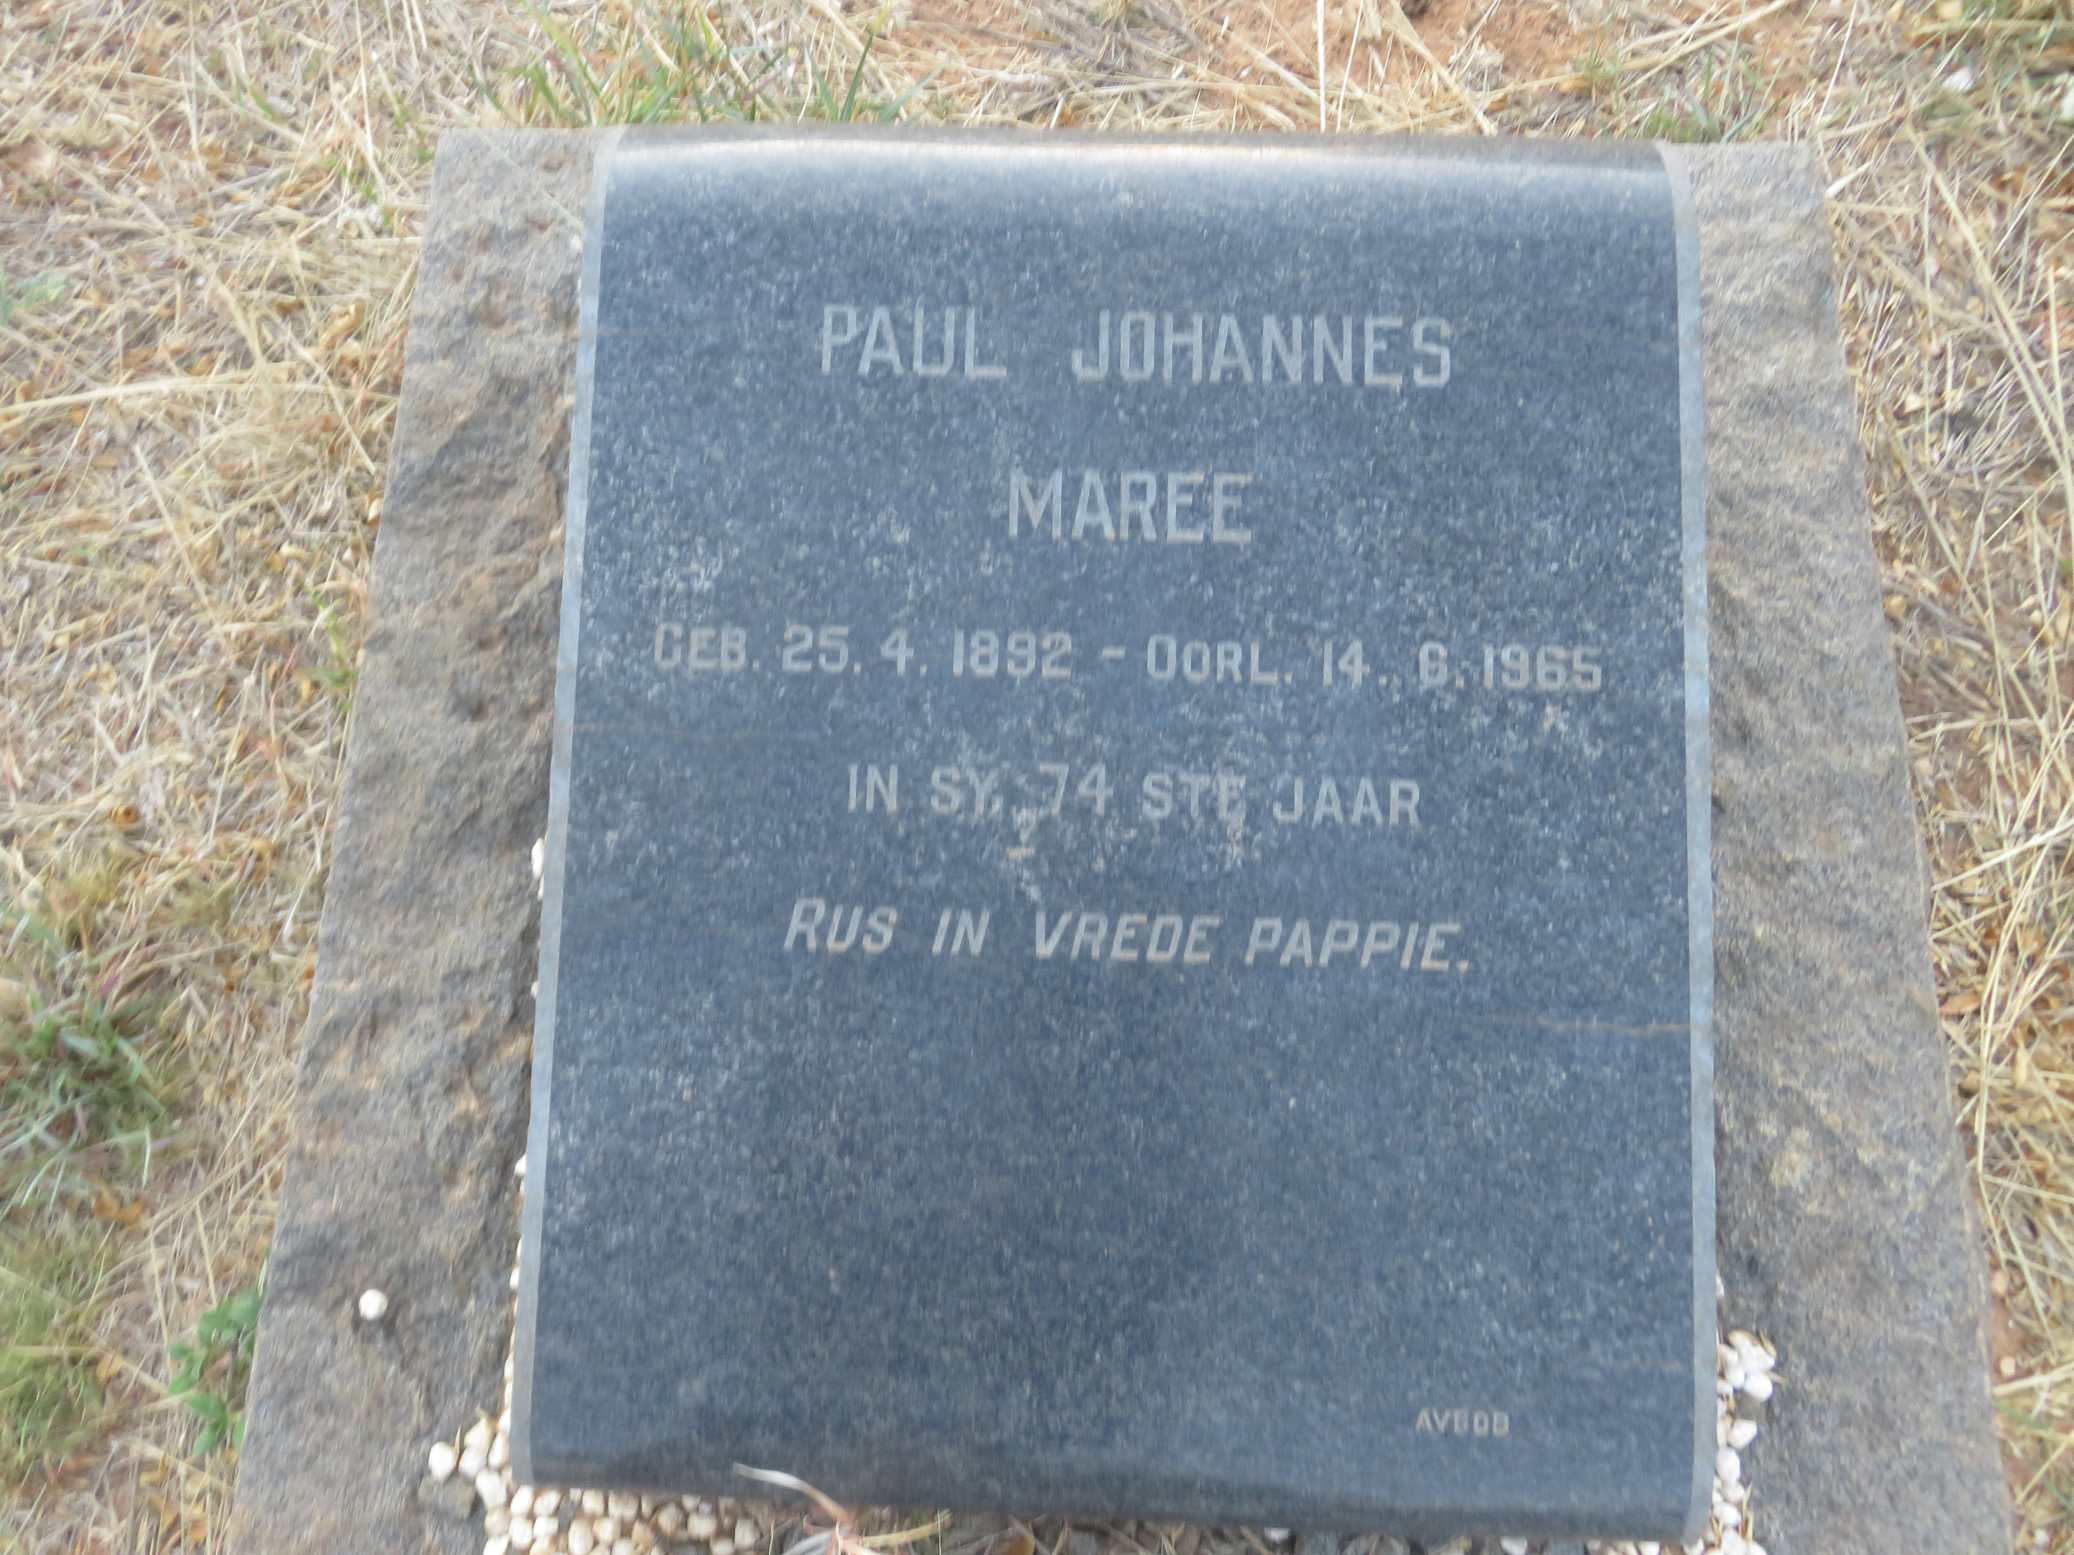 MAREE Paul Johannes 1892-1965